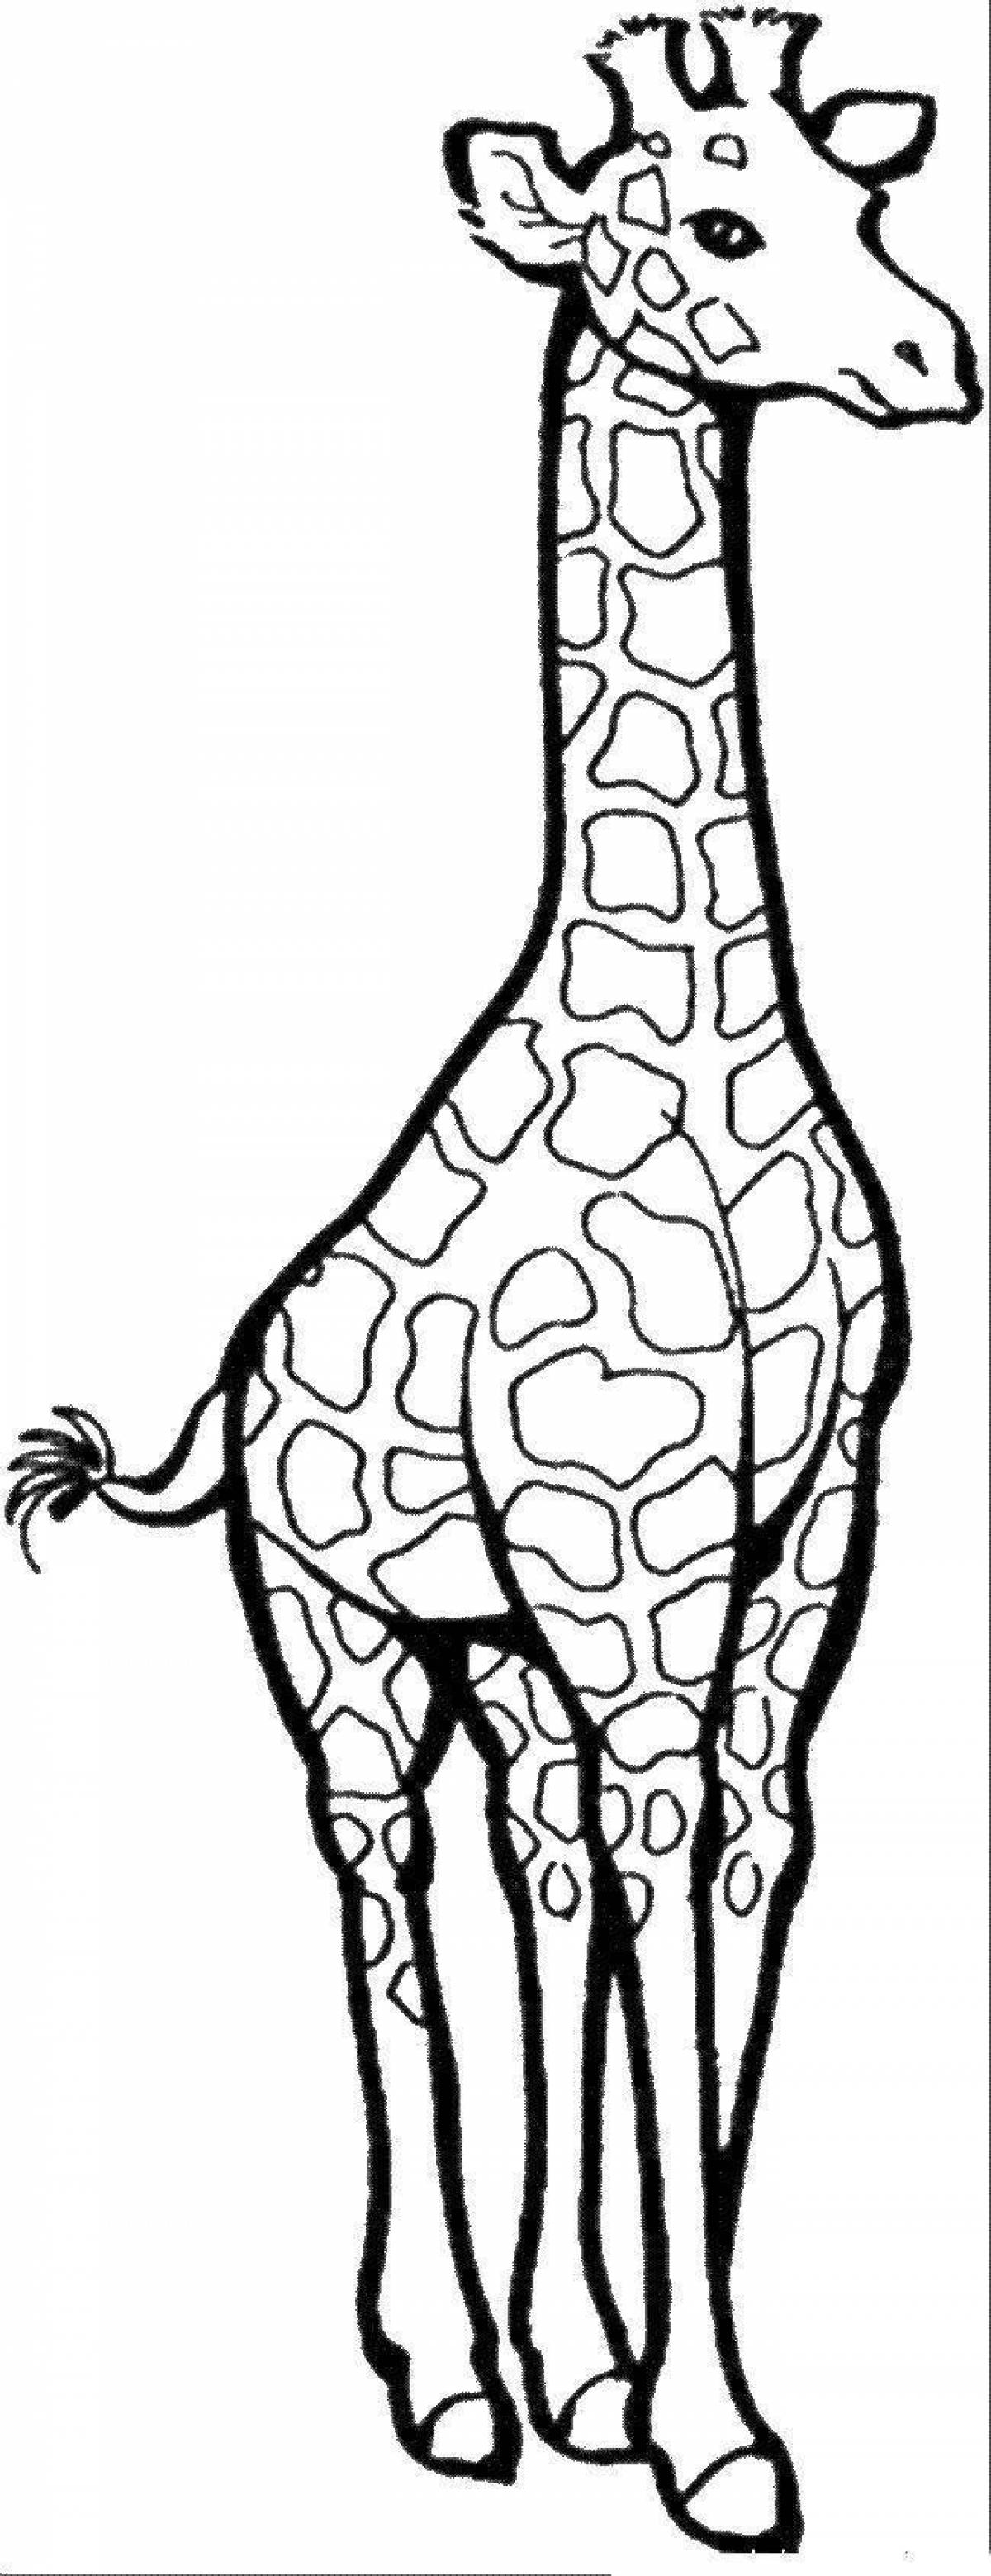 Радостный рисунок жирафа для детей